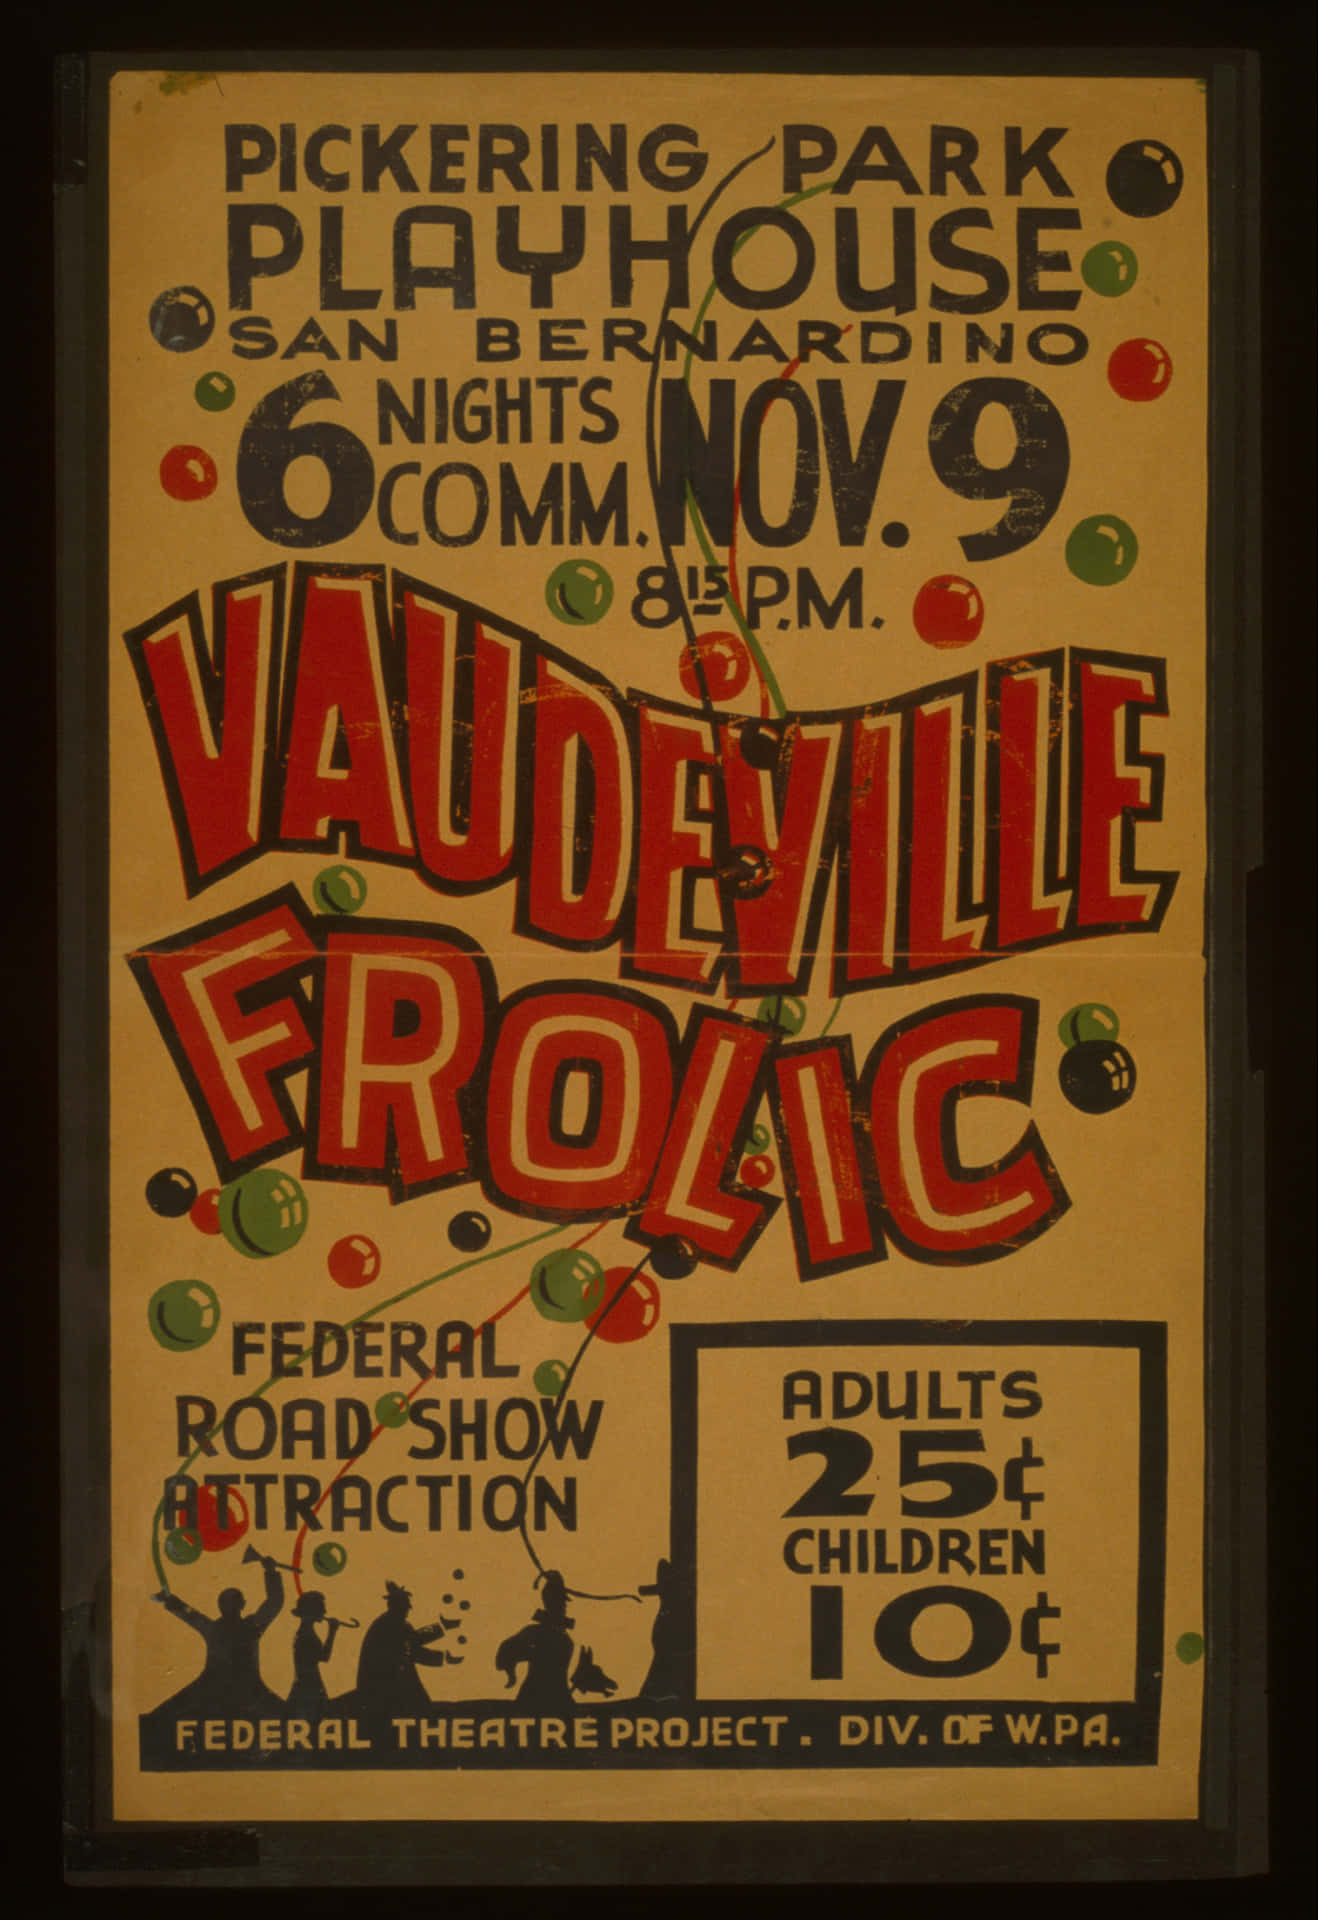 Vintage Vaudeville Frolic Poster Wallpaper